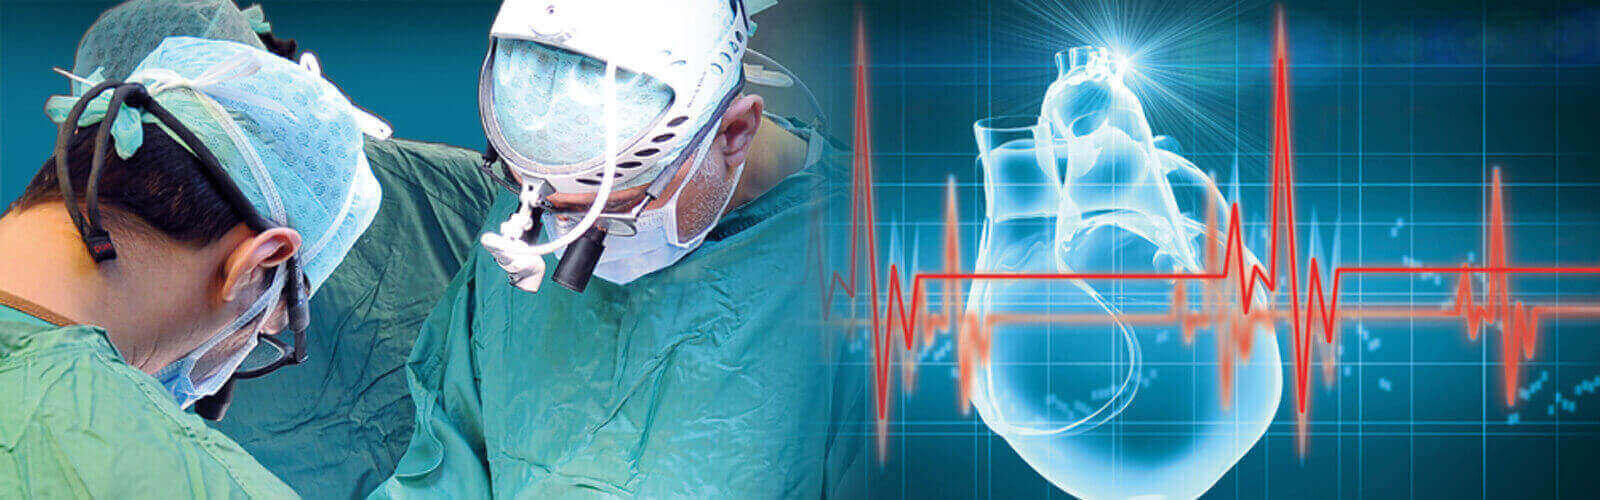 Coronary Angioplasty Surgery in Mexico